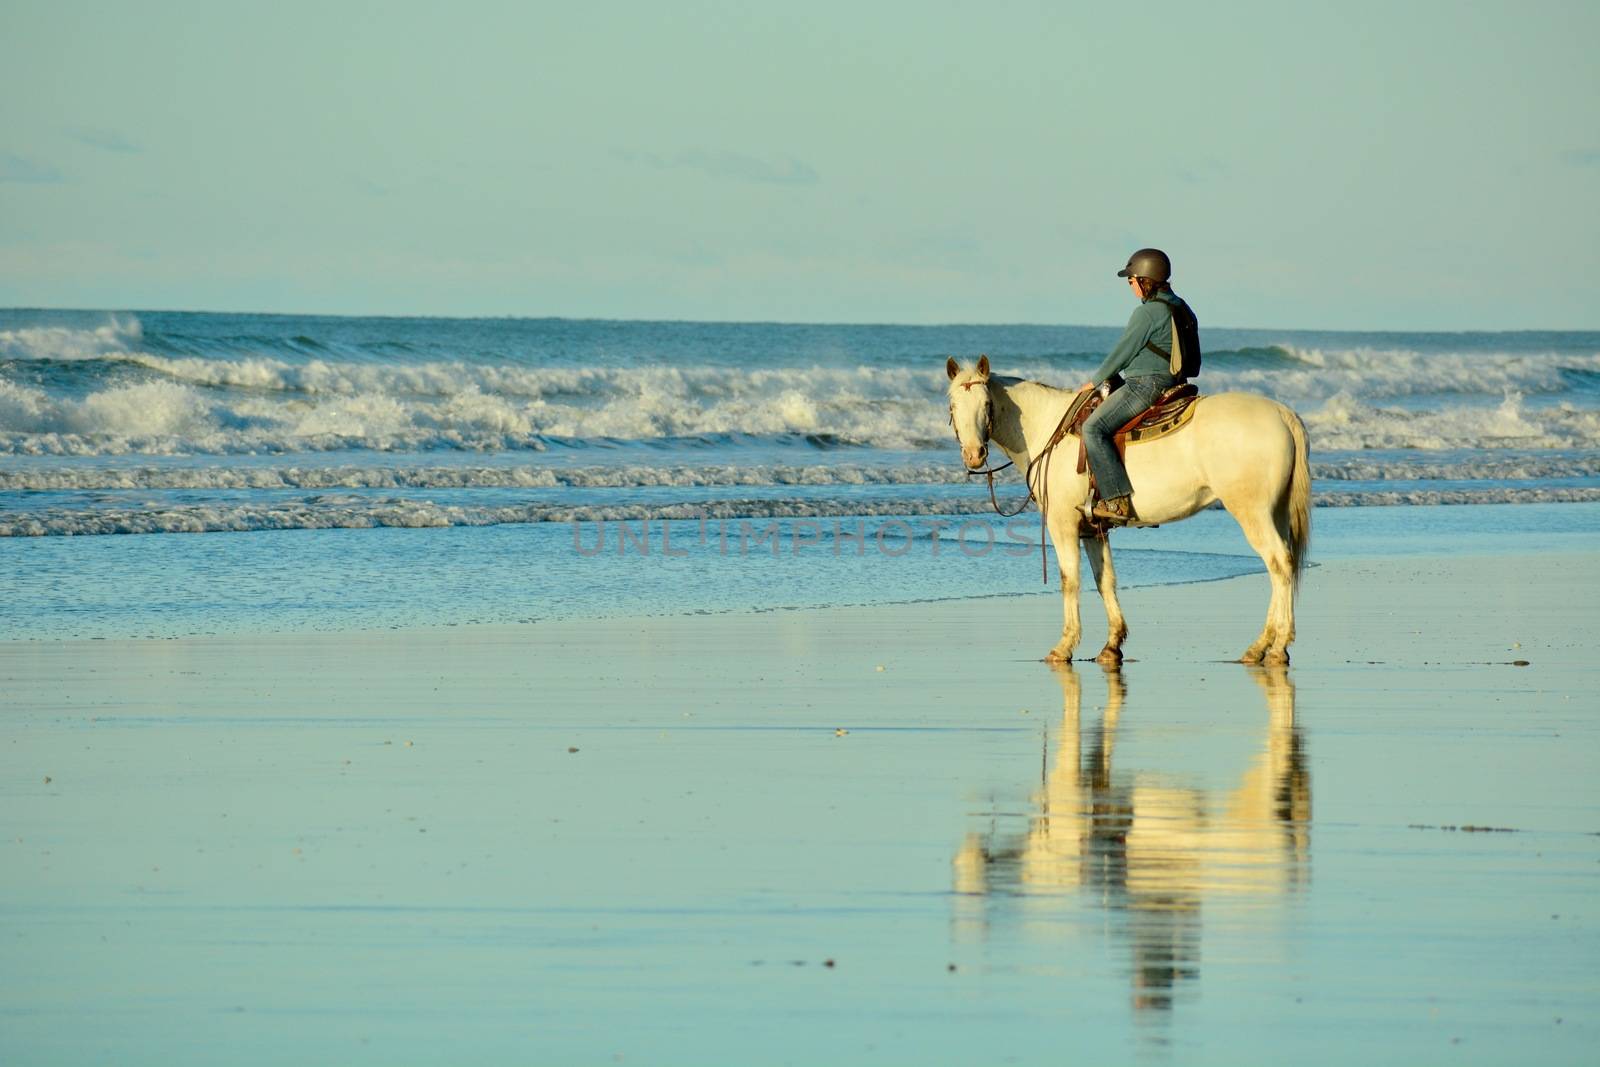 Papamoa Beach, Papamoa, New Zealand – July 07, 2019: an unidentified woman on a white horse at a seashore. by Marshalkina